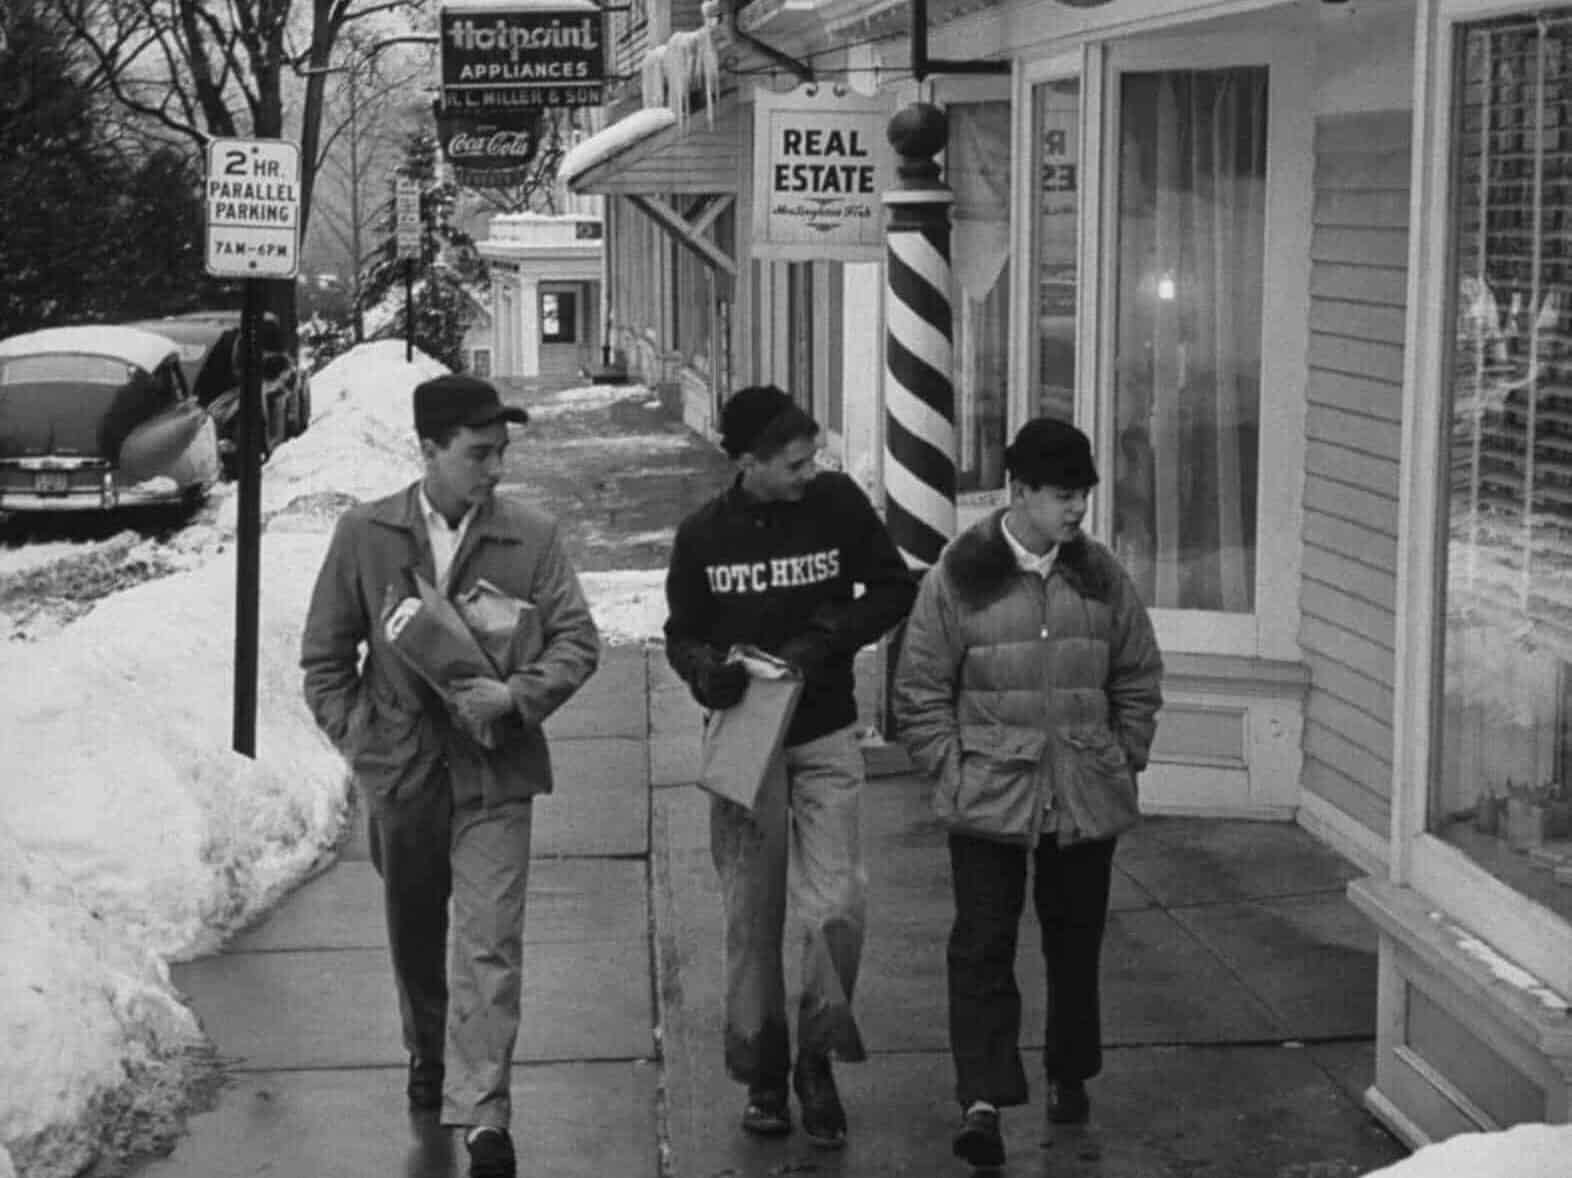 Ivy School Boys on a Walk